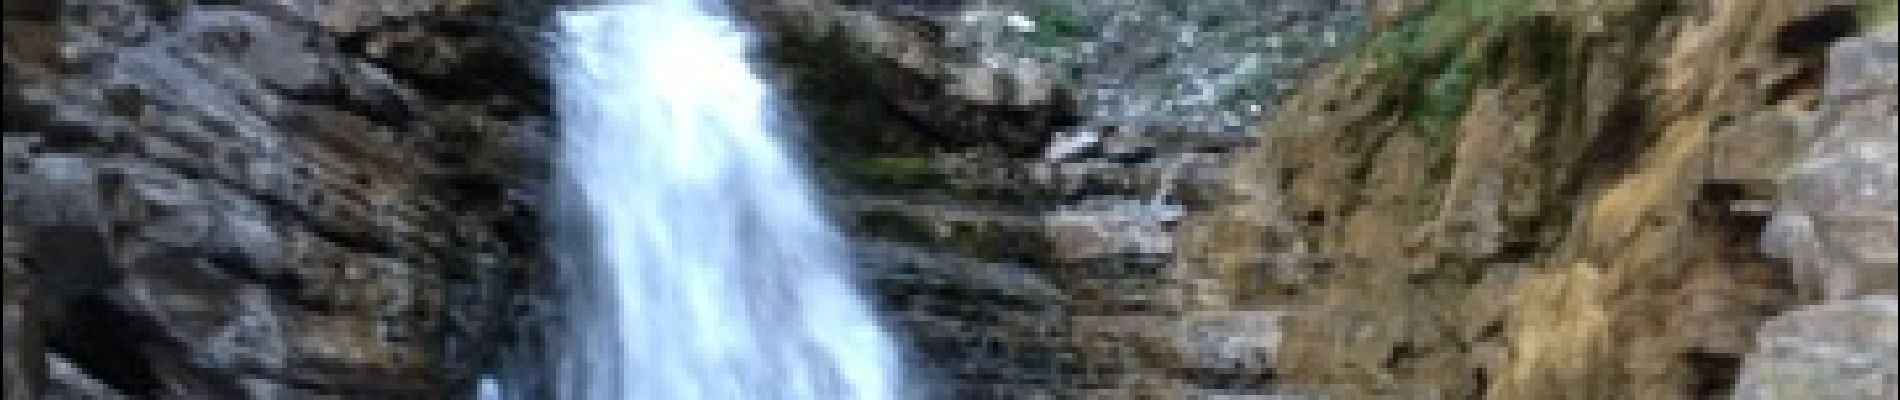 POI Colmars - La cascade de la Lance - Photo